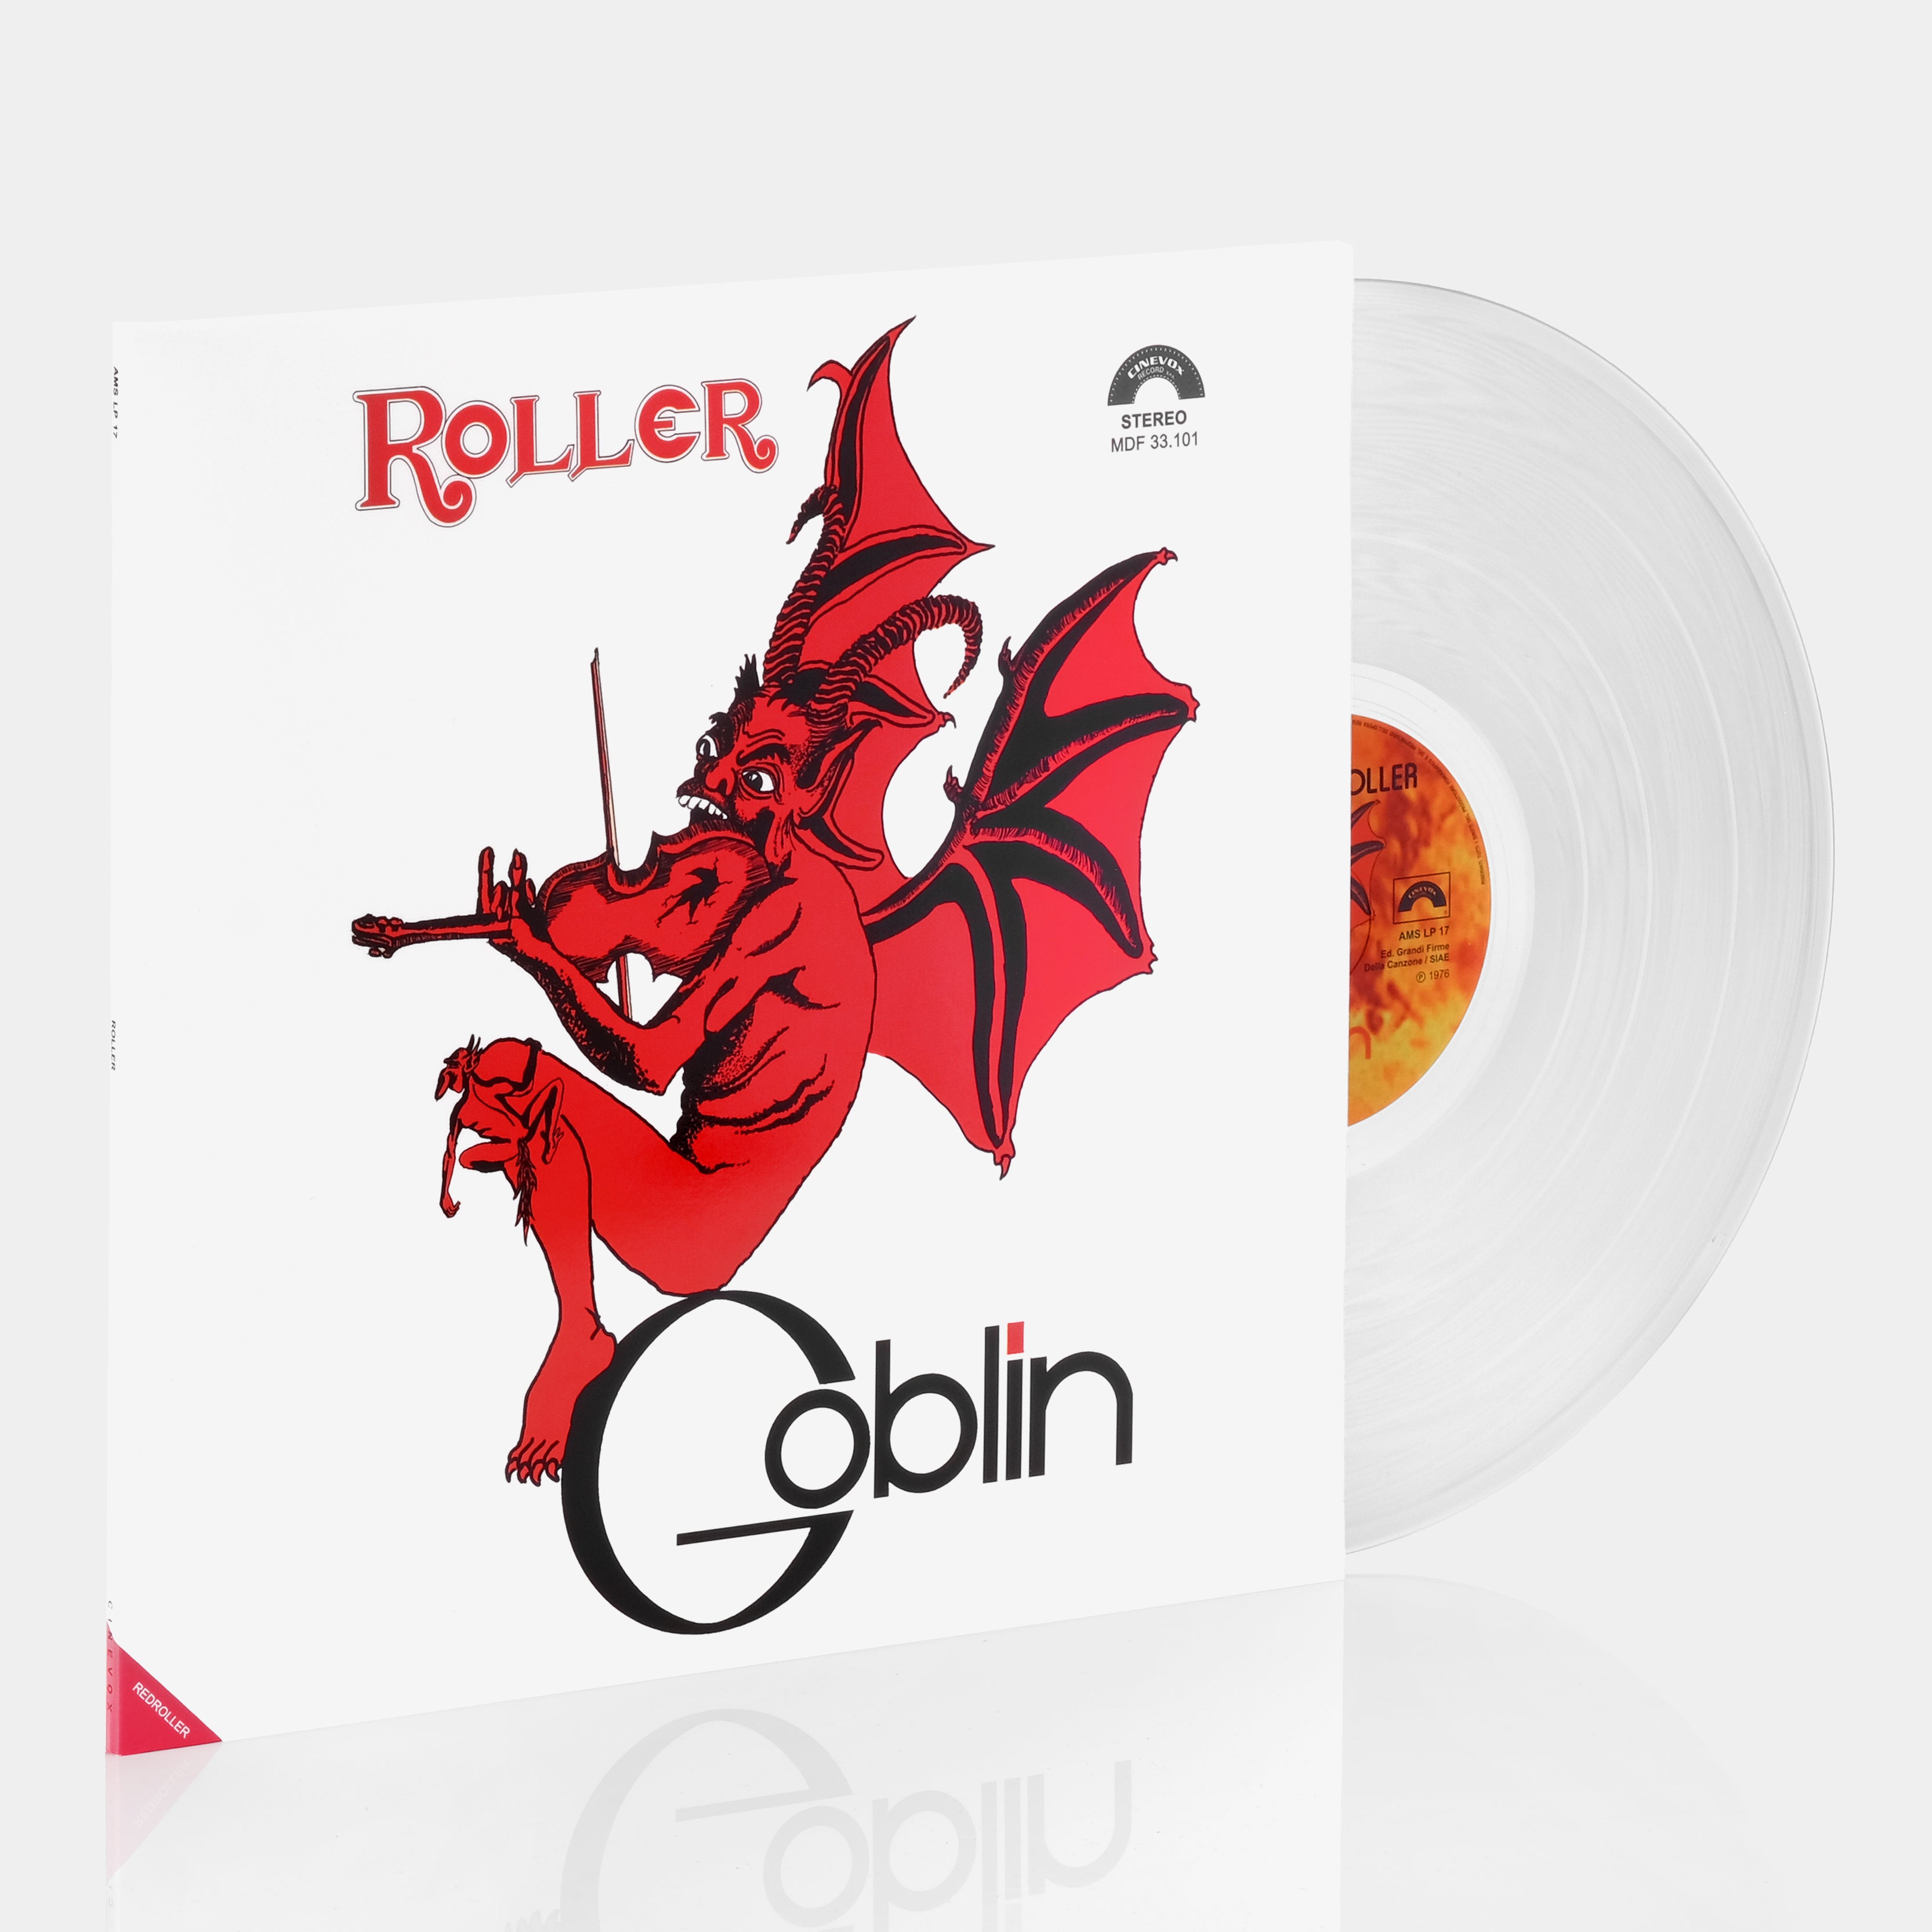 Goblin - Roller LP Crystal Vinyl Record